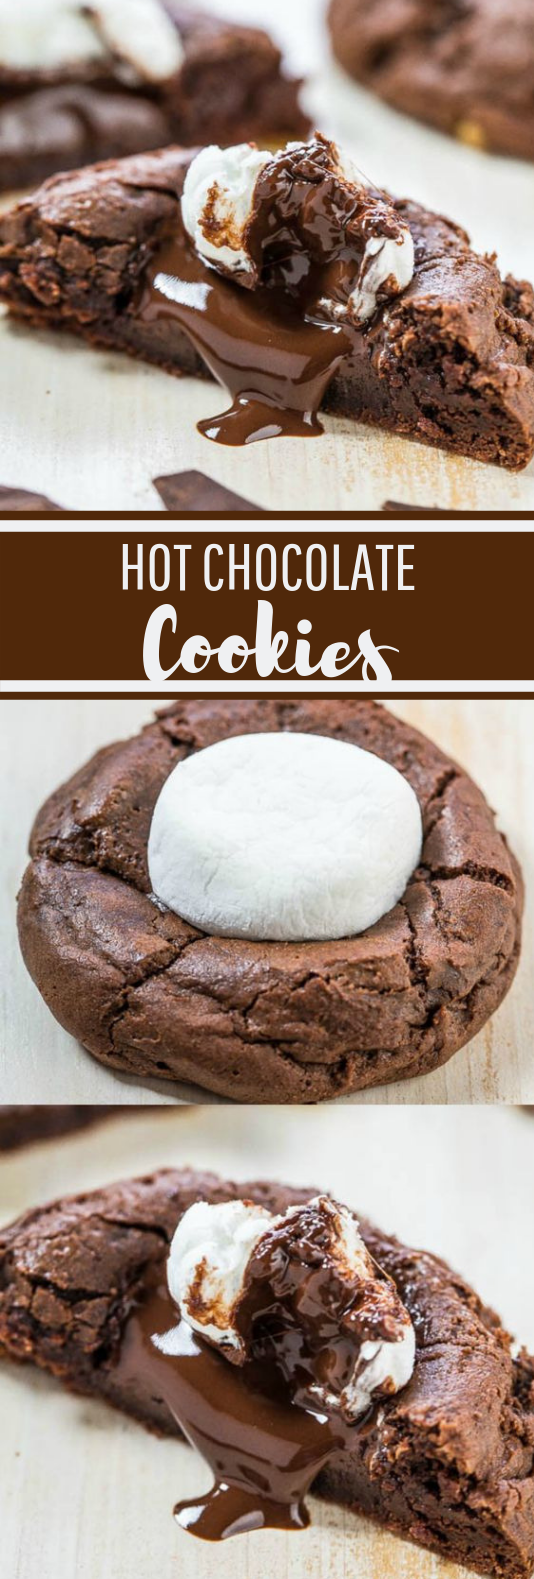 Hot Chocolate Cookies #dessert #cookies